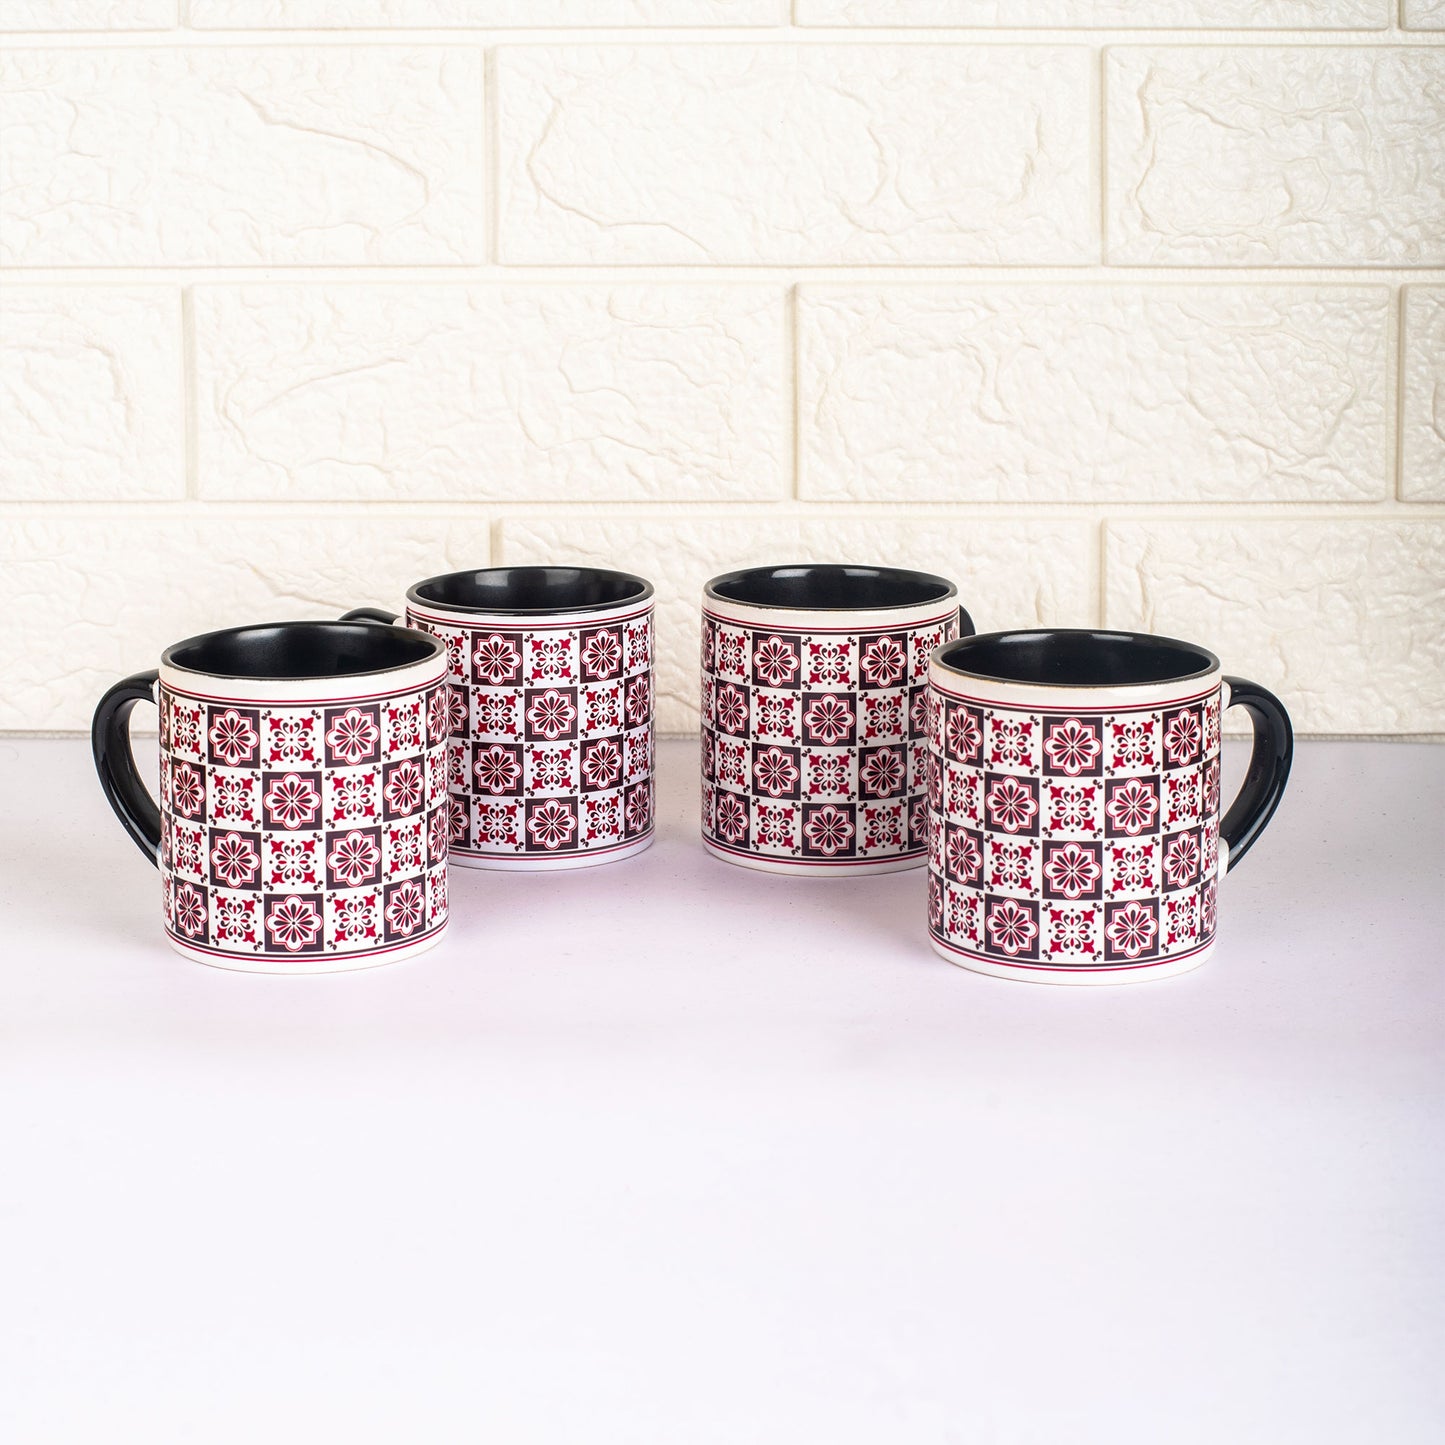 Vintage Tile Pattern Ceramic Tea cups - Set of 4 - Black and Pink